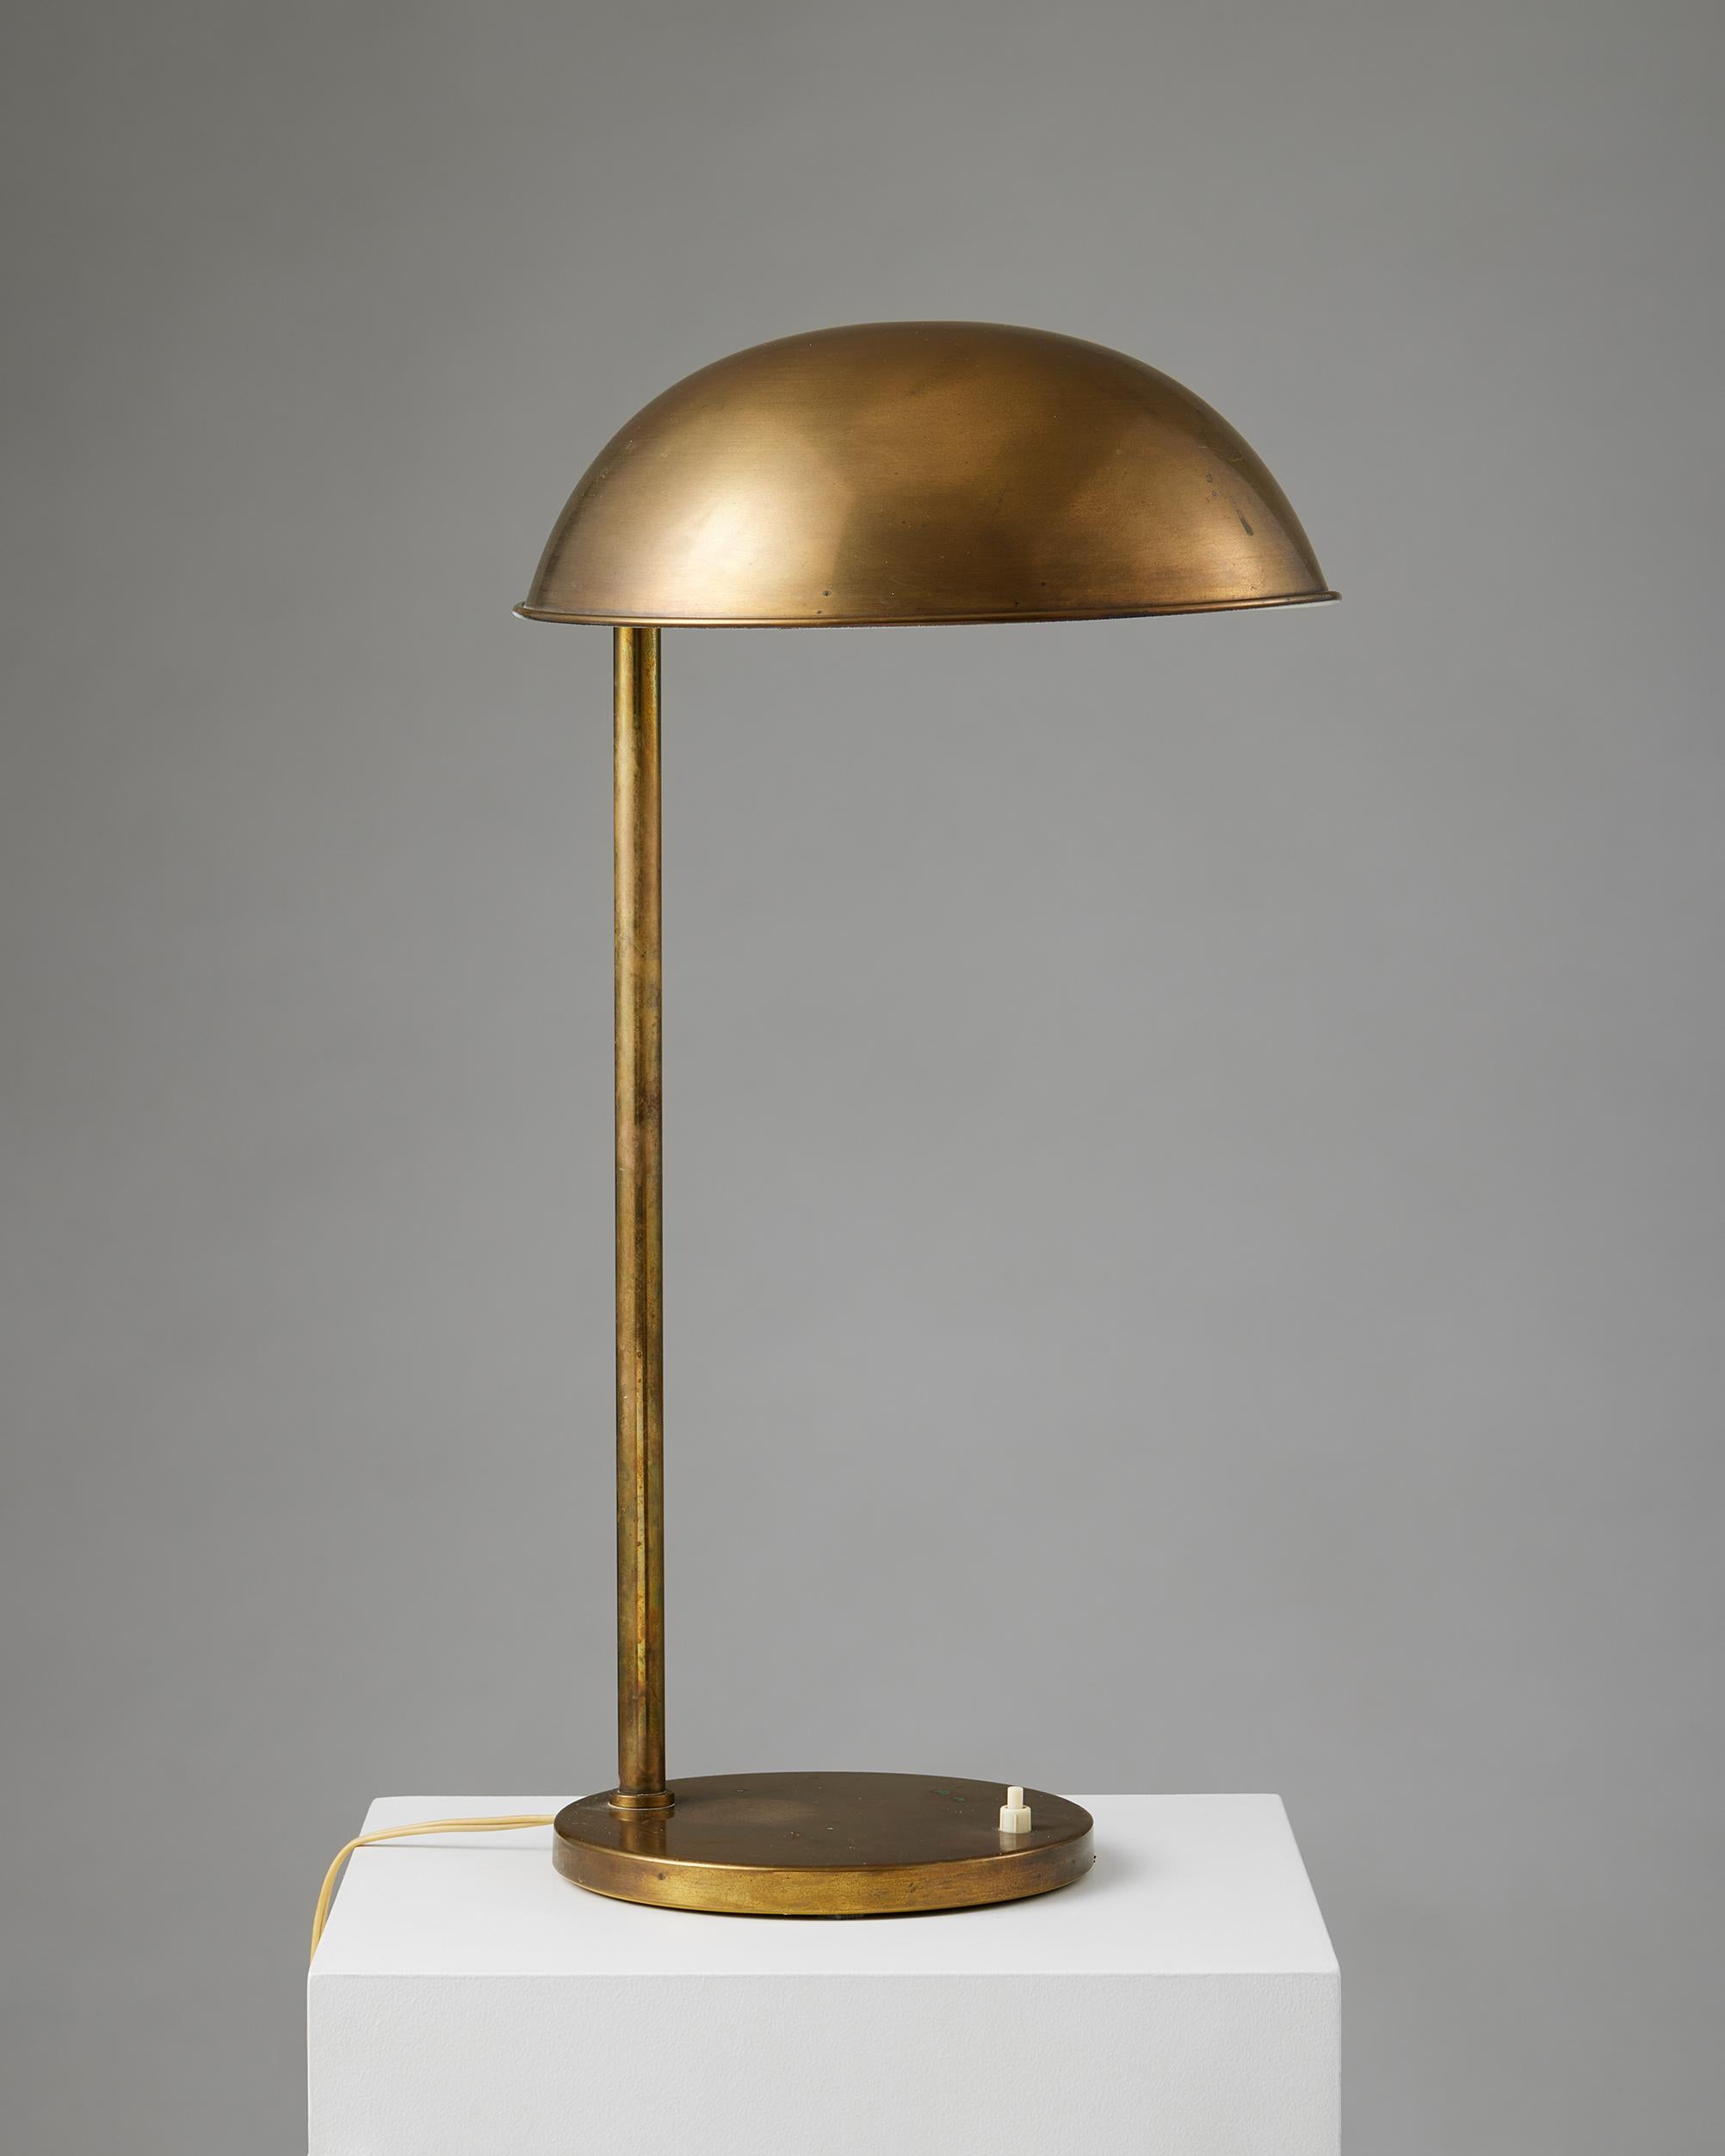 Tischlampe, anonym,
Dänemark, 1960er Jahre.

Messing.

H: 61 cm
Durchmesser der Basis: 21,5 cm
Durchmesser des Lampenschirms: 31 cm